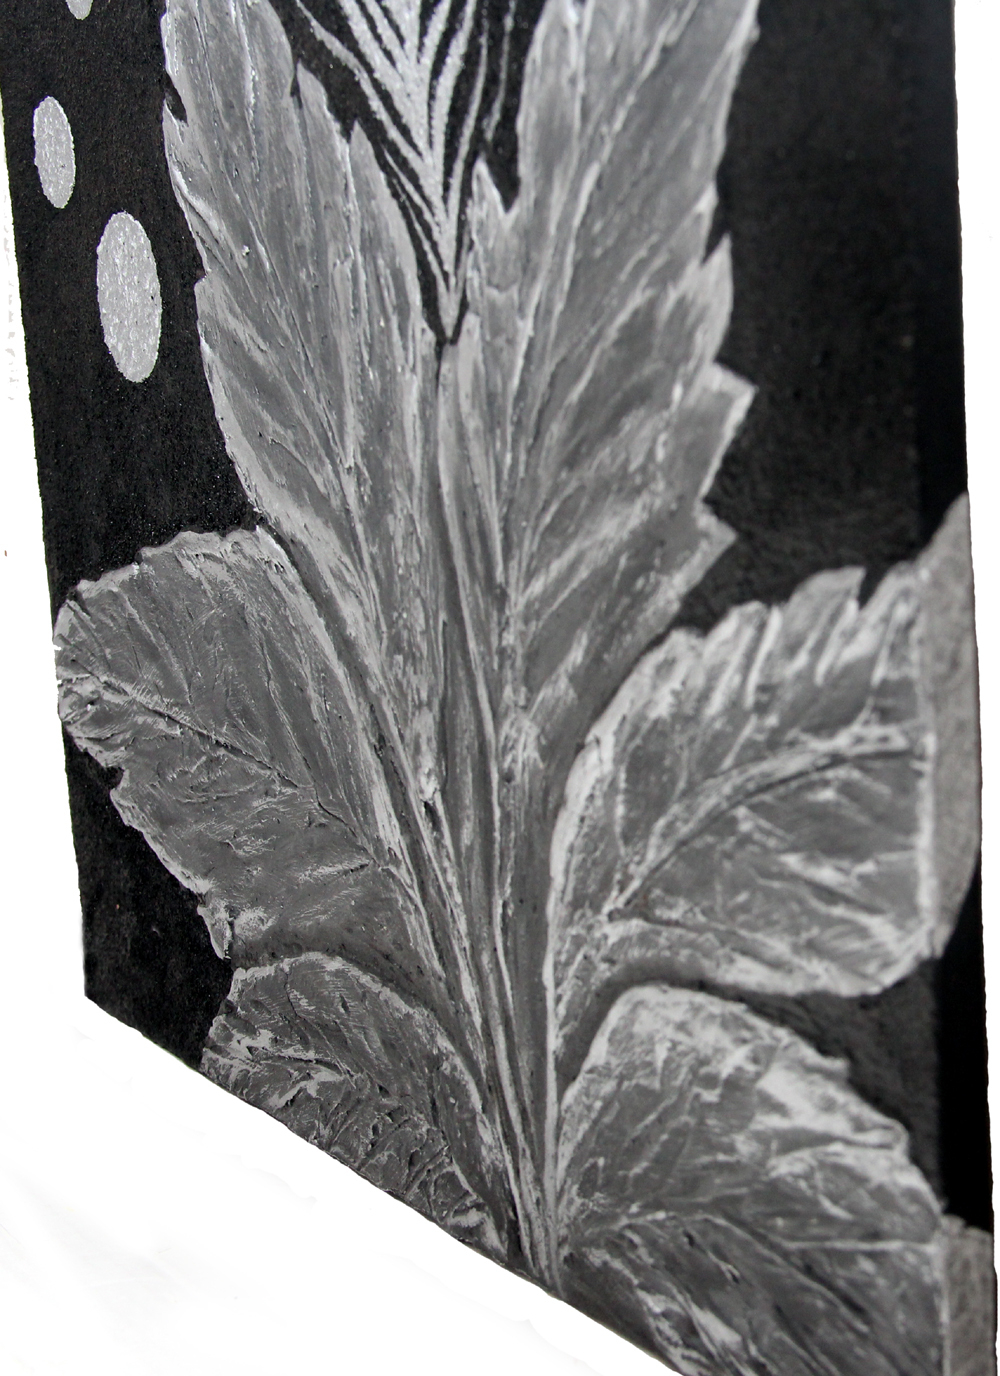 Декобокс " Серебряные листья" рисованный каменной крошкой 30-30см